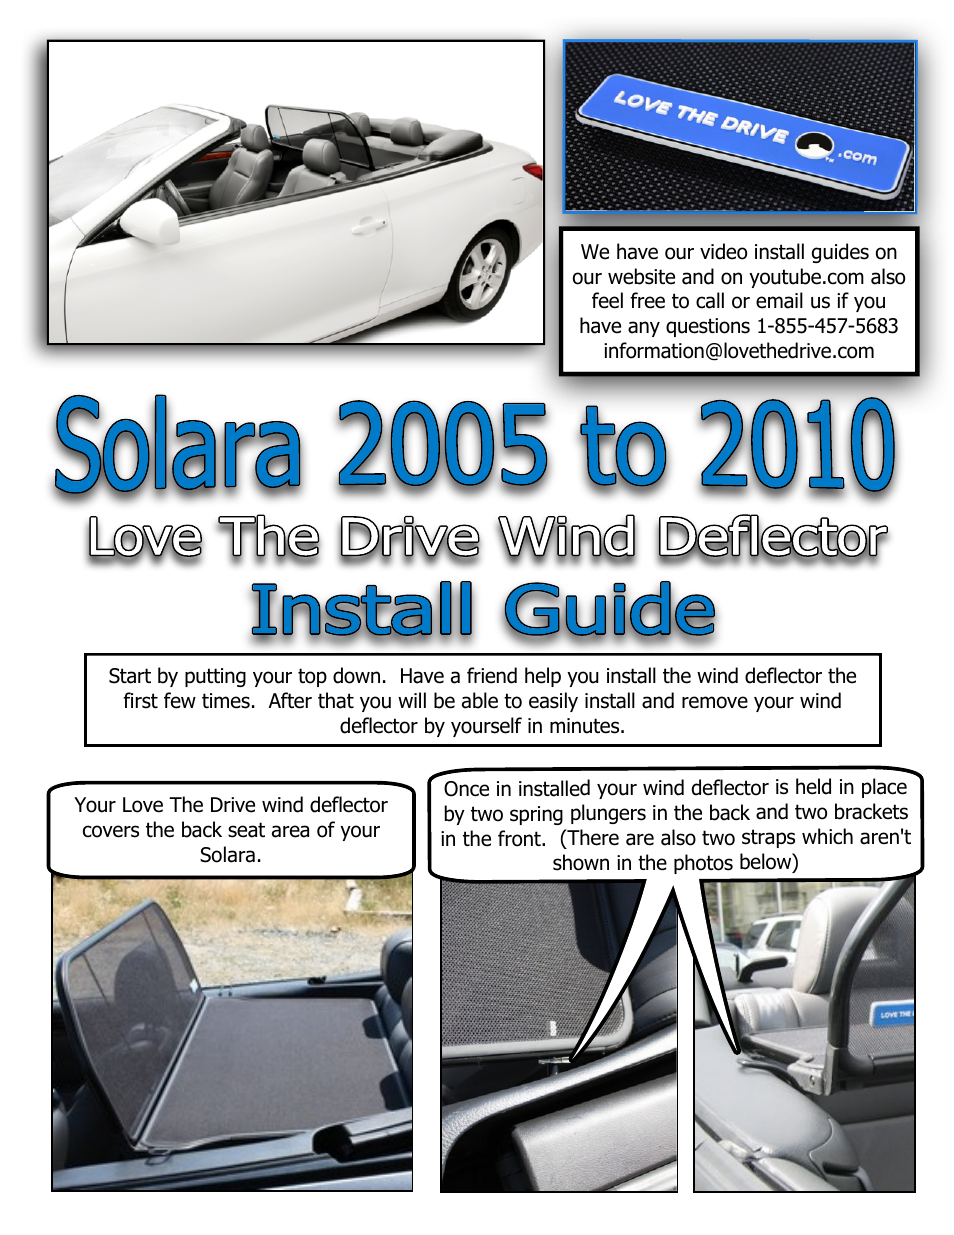 Solara Wind Deflector 2005 to 2010